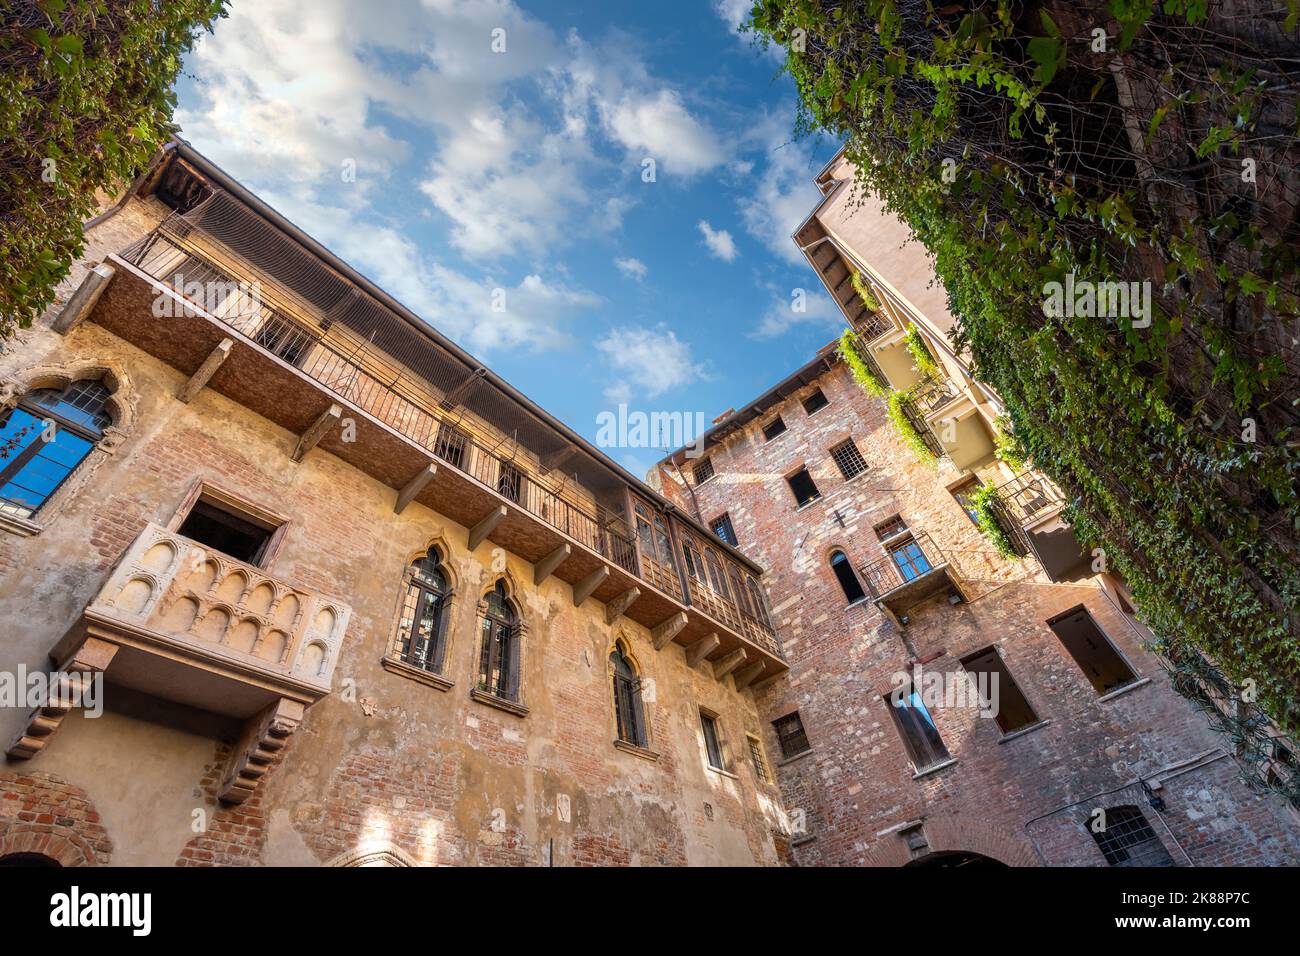 Weitwinkelblick auf Juliets Balkon und Haus, ein gotisches Haus aus den 1300s Jahren und Museum, mit einem Steinbalkon, der Shakespeare inspiriert haben soll. Stockfoto